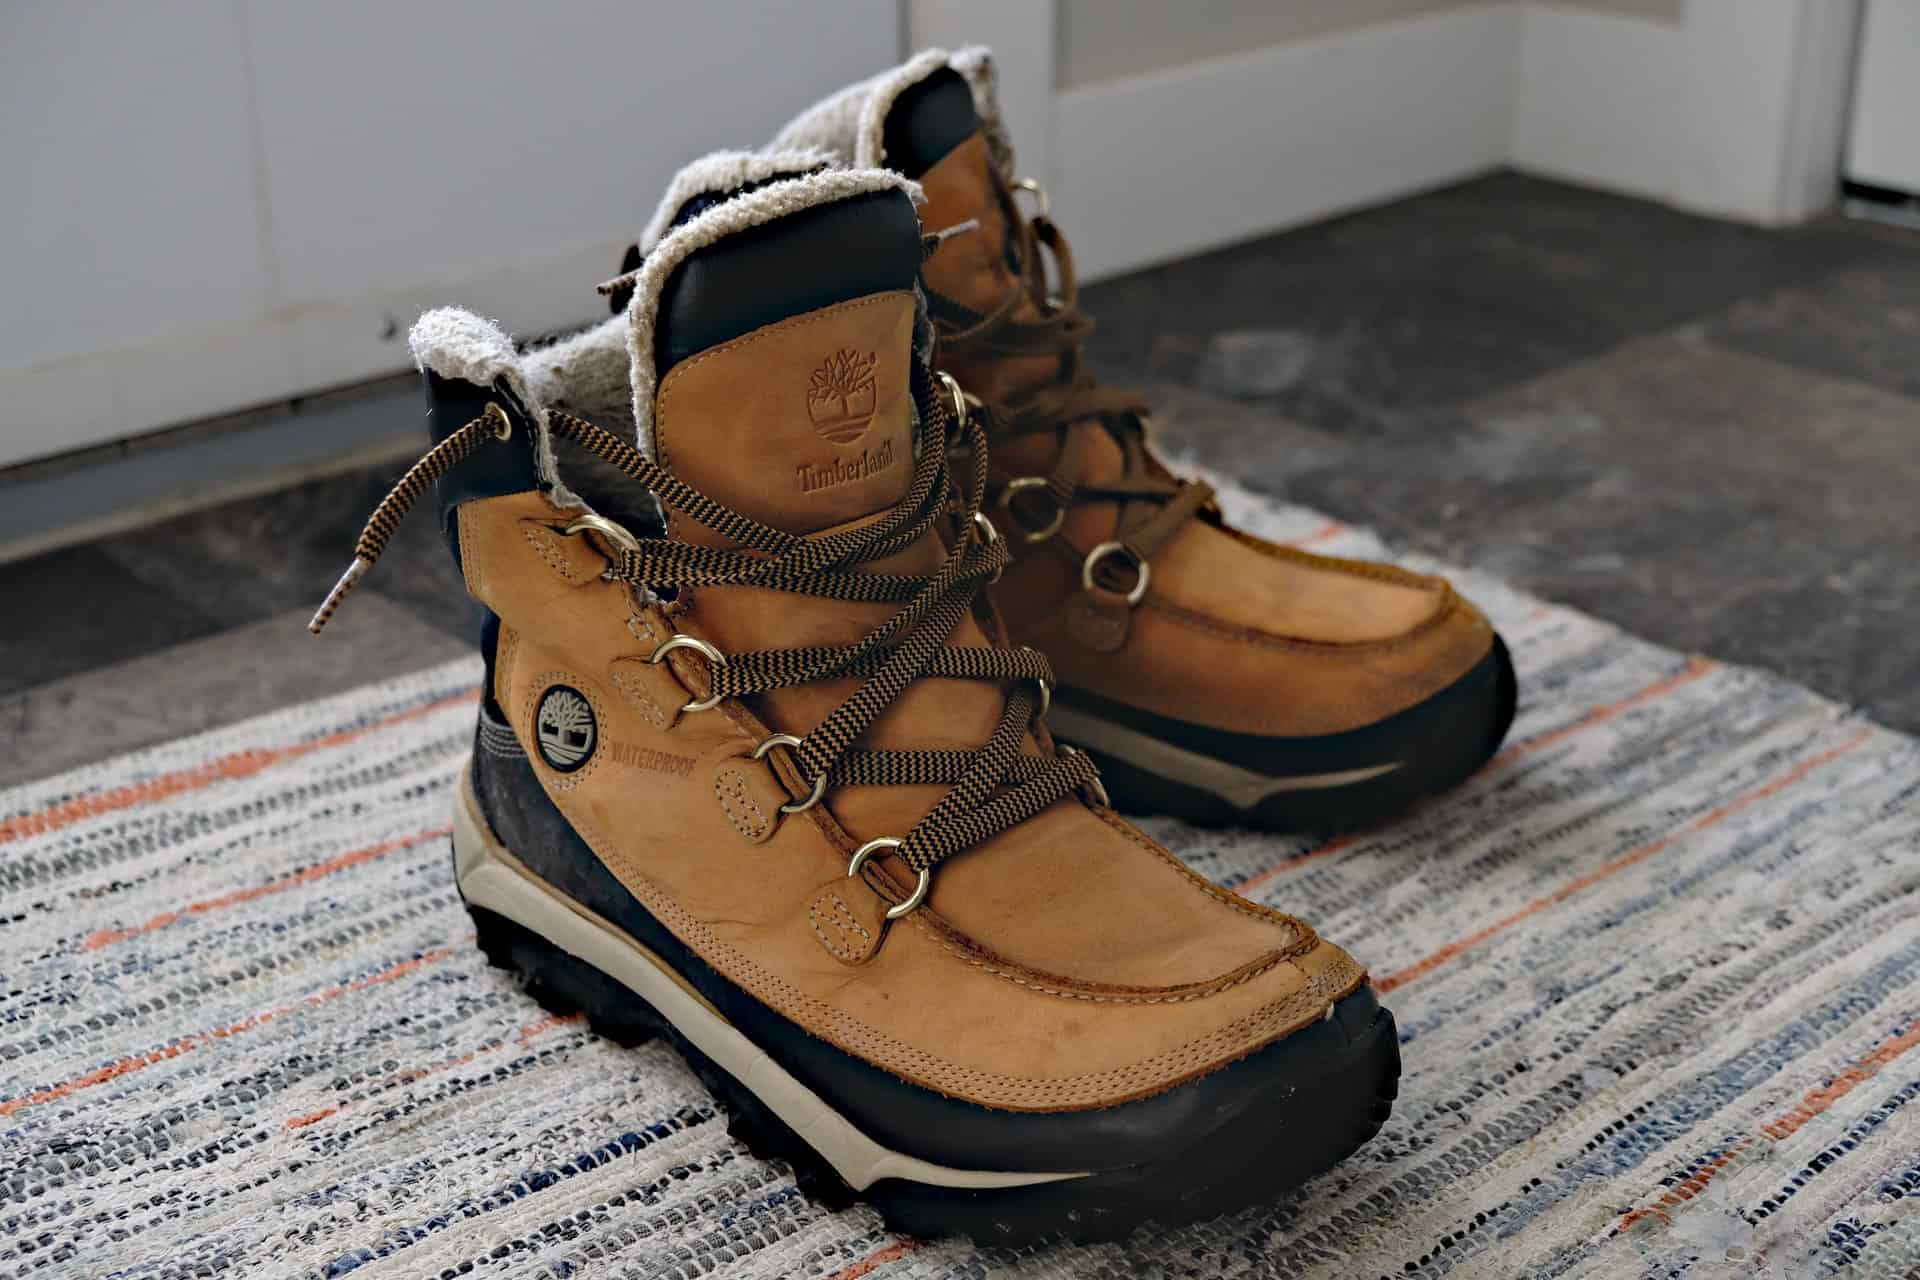 Modne buty na zimę – jakie wybrać?